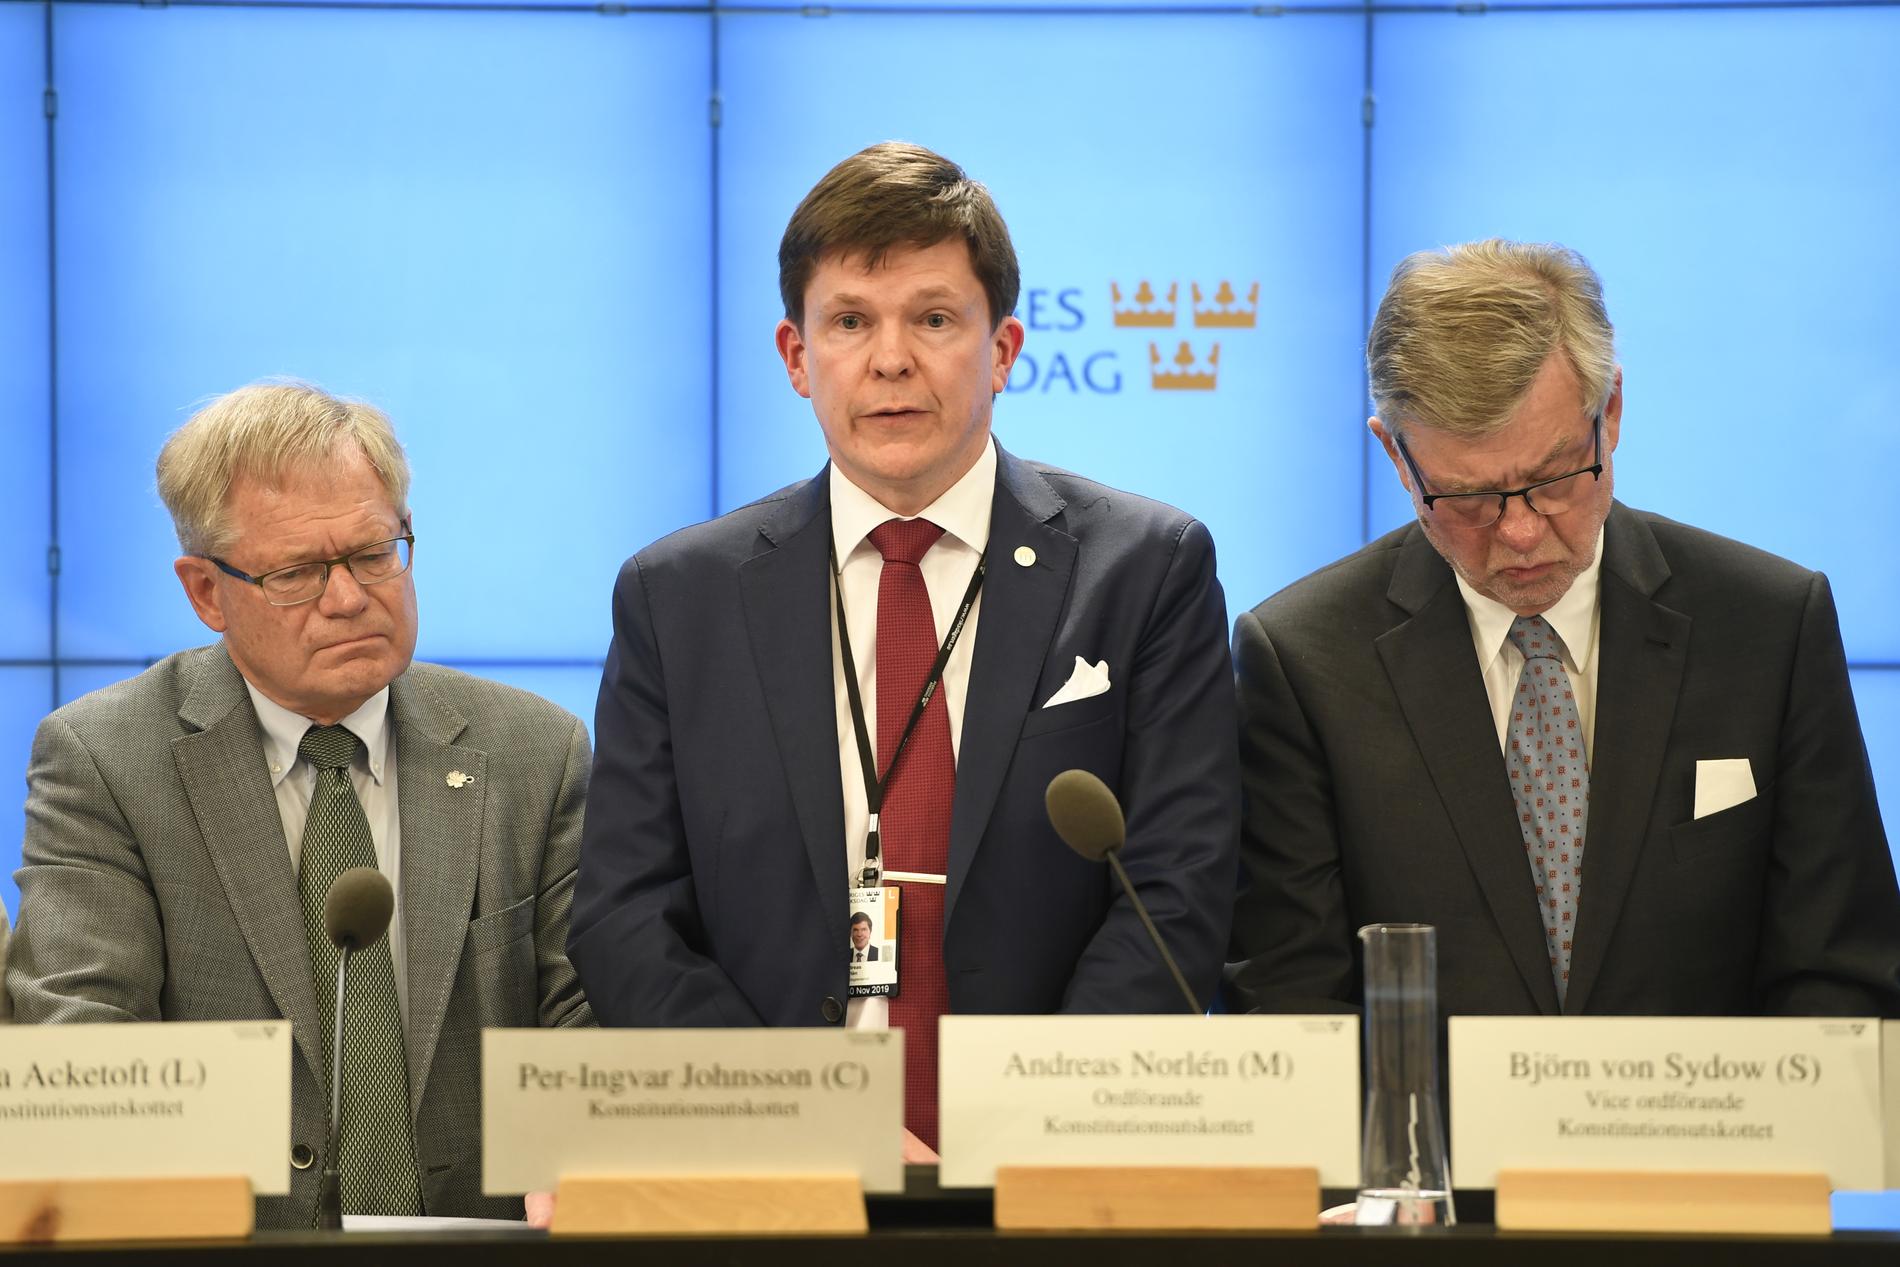  Per-Ingvar Johnsson (C),  Andreas Norlén (M) och Björn von Sydow (S) vid en pressträff. 